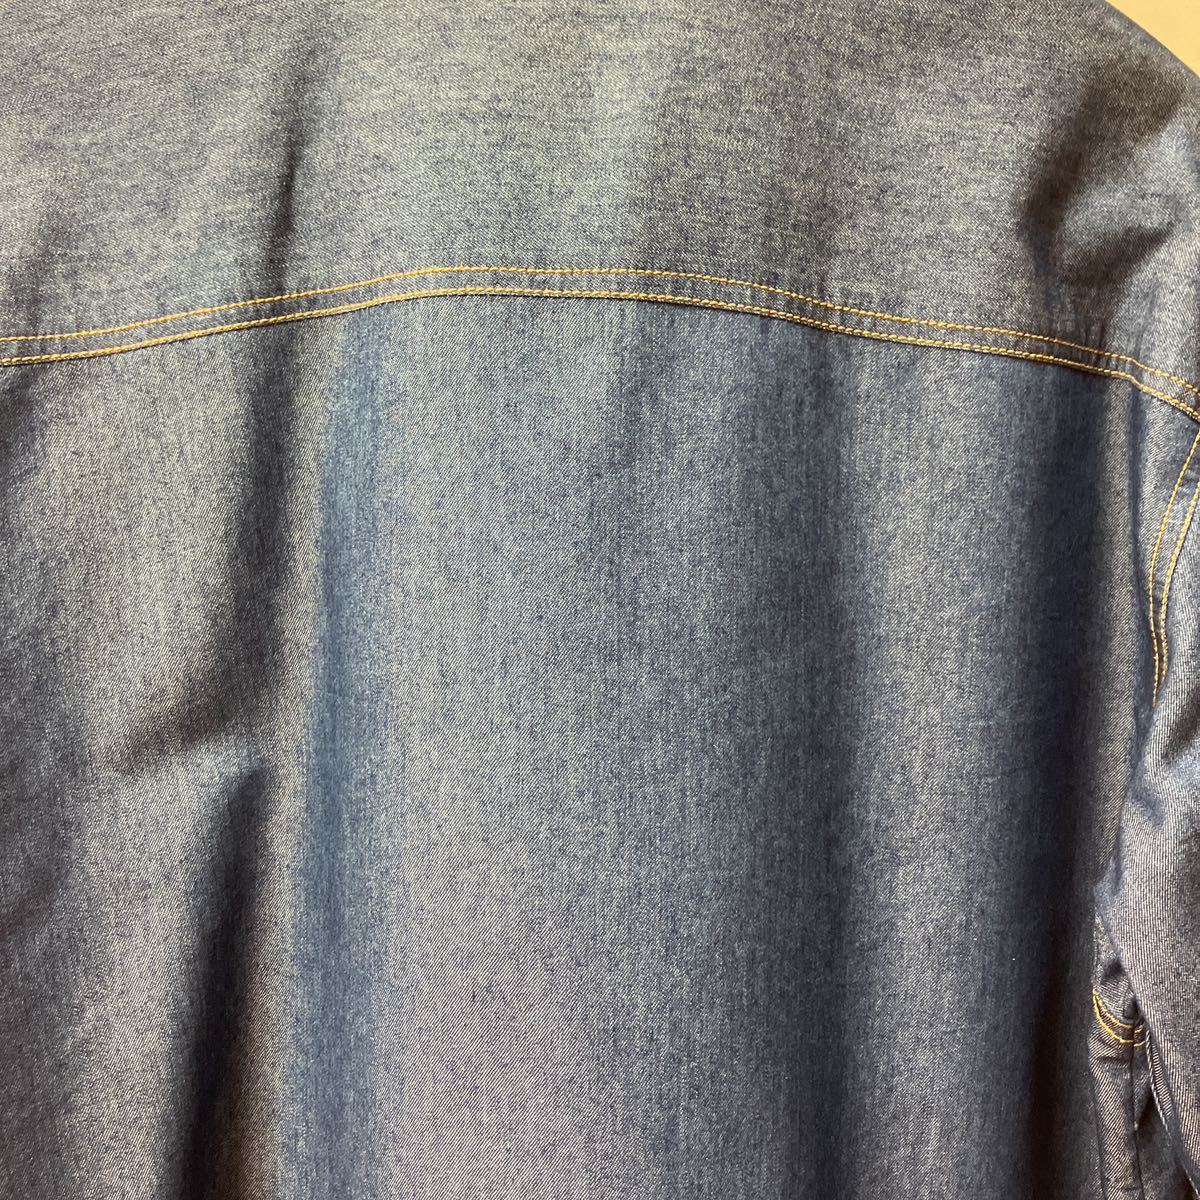 ほぼ新品 セレブ感溢れる EDDIE ODYSSEY 薄手のジップアップブルゾン トラッカーズジャケット クリーニング済 デニム調 刺繍の画像8